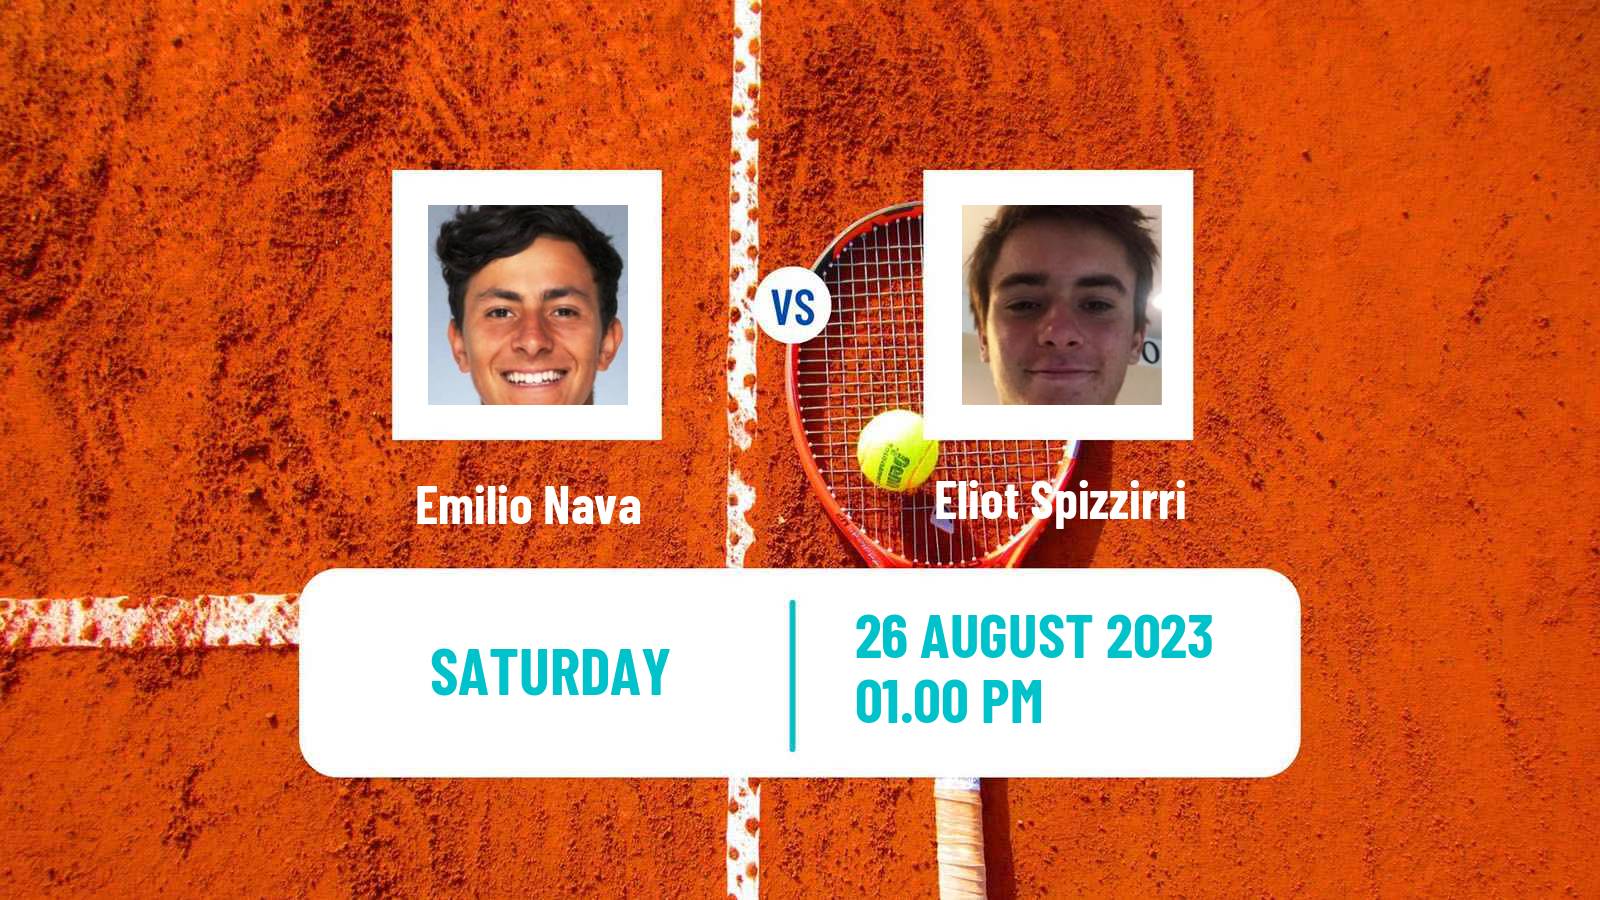 Tennis ATP US Open Emilio Nava - Eliot Spizzirri